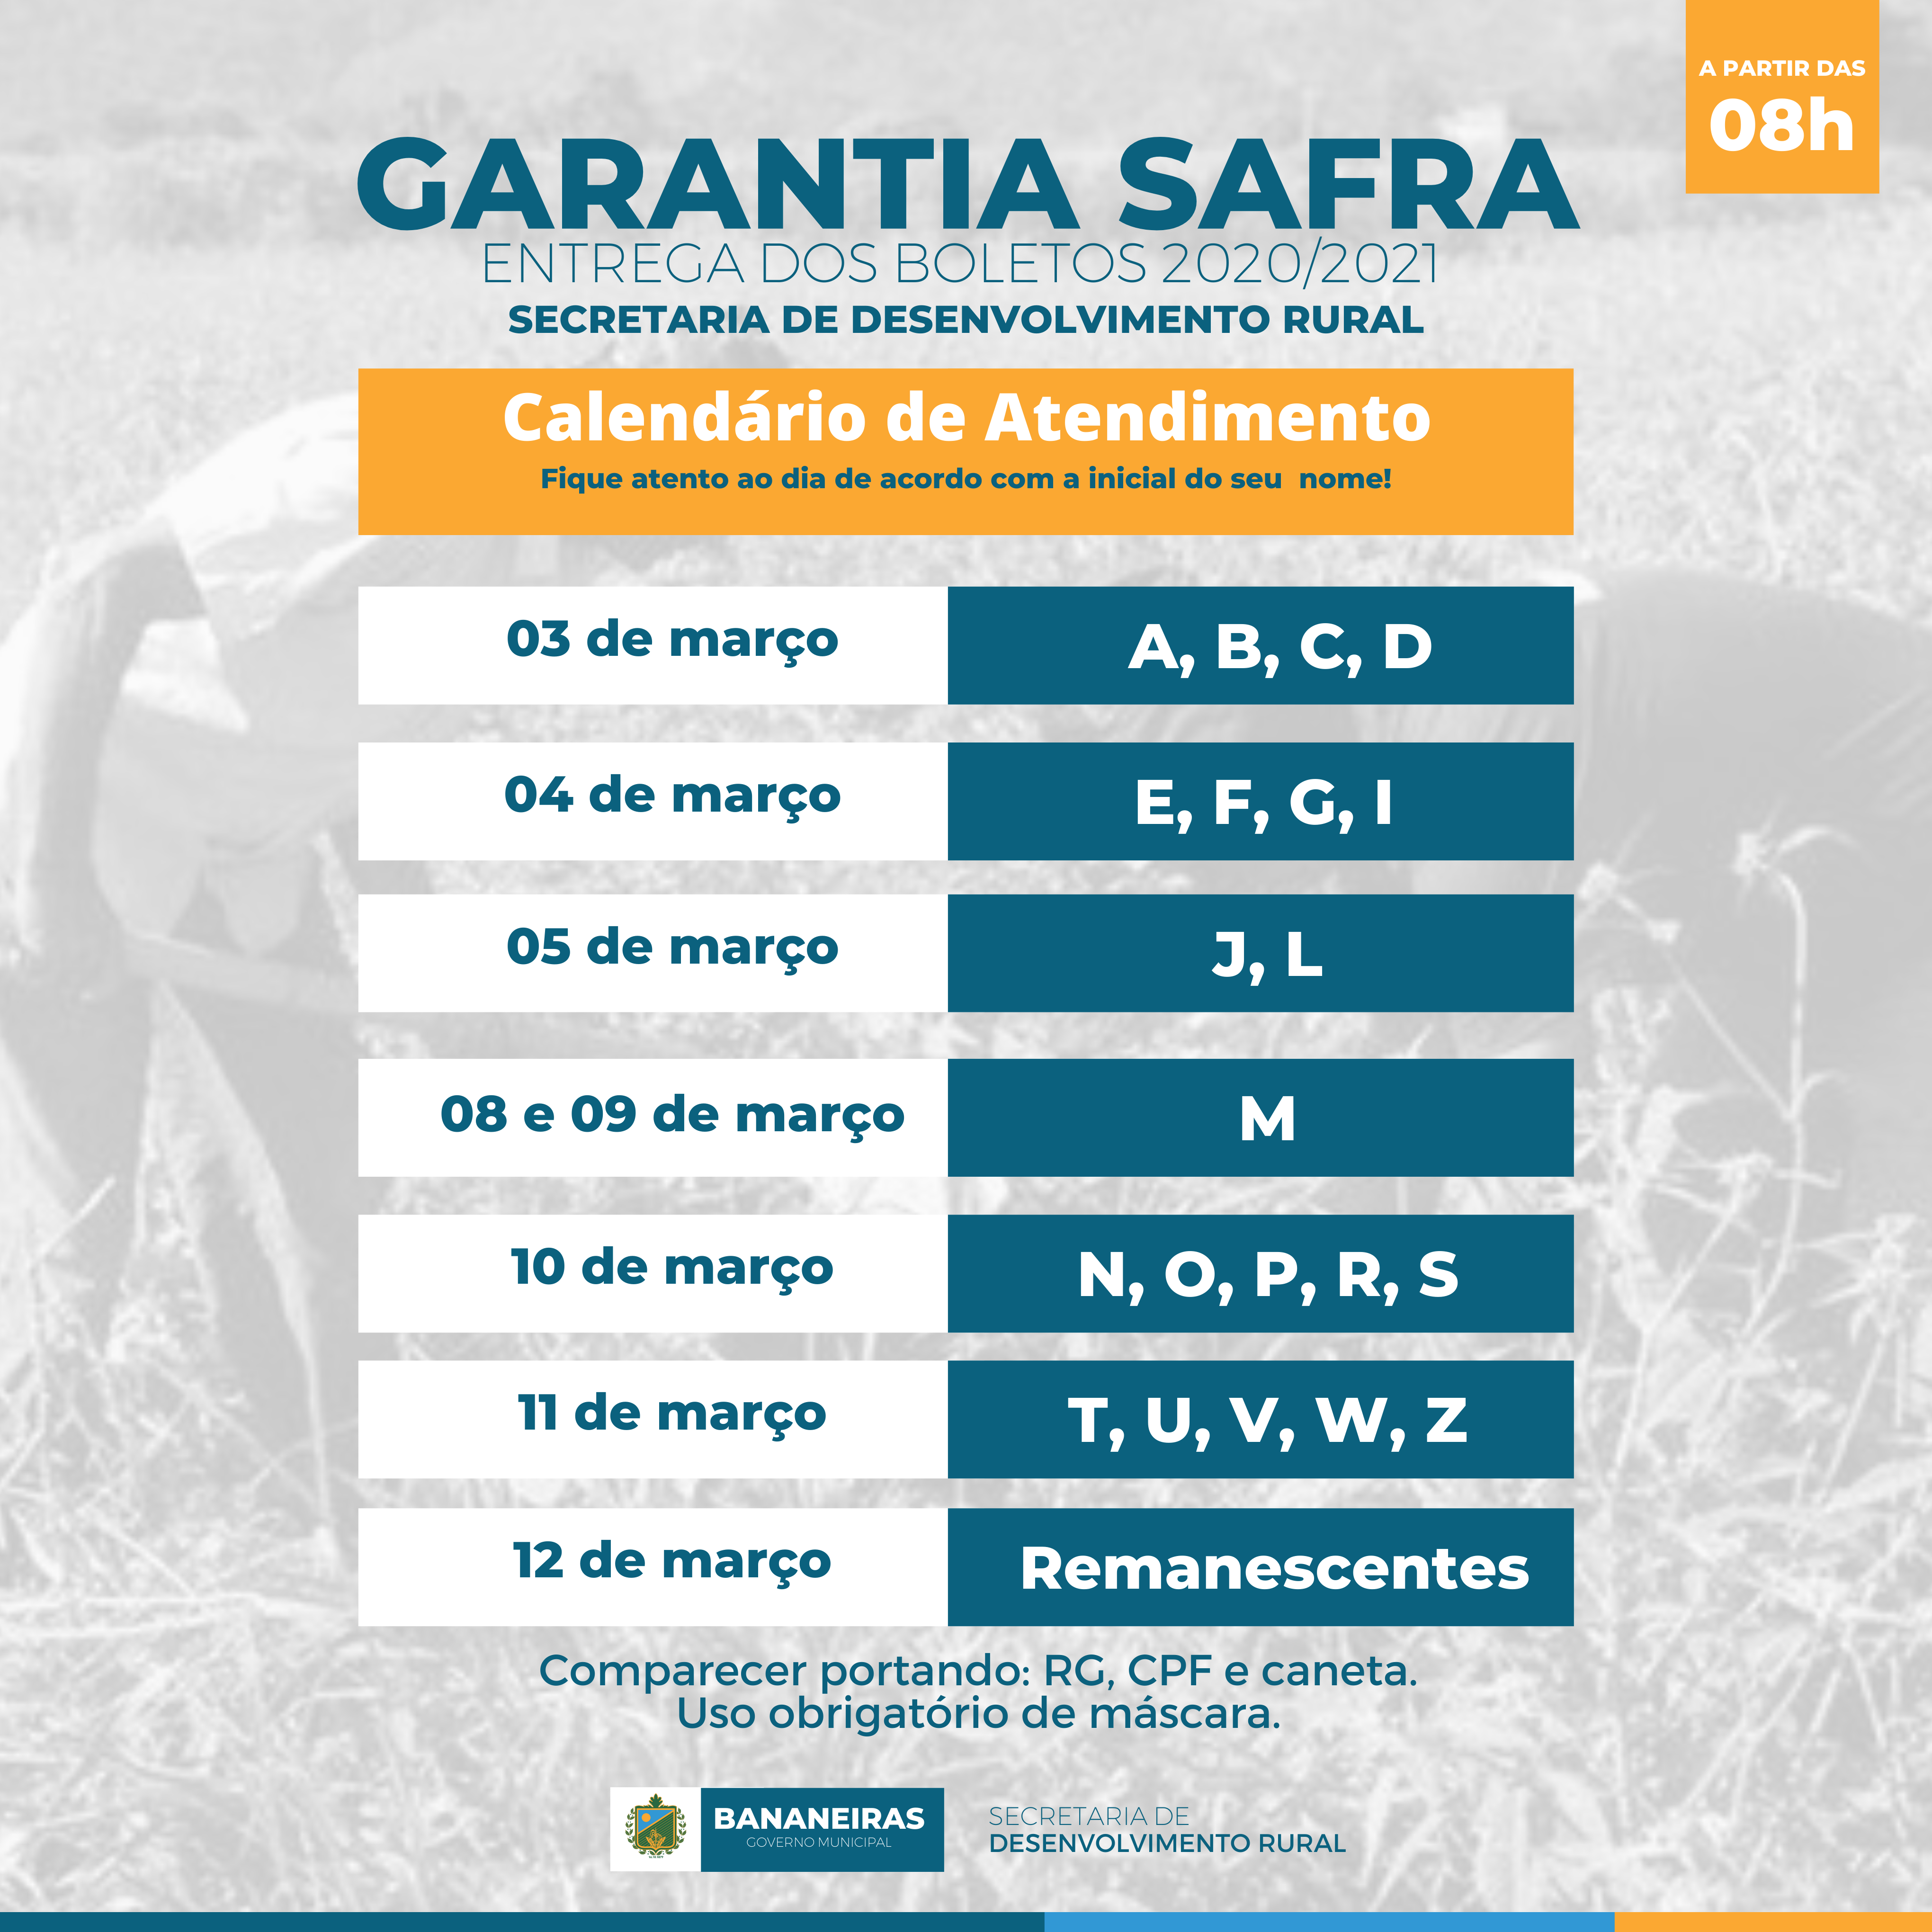 Os boletos do Garantia Safra 2020/2021 começam a ser entregues nessa quarta (03), em Bananeiras